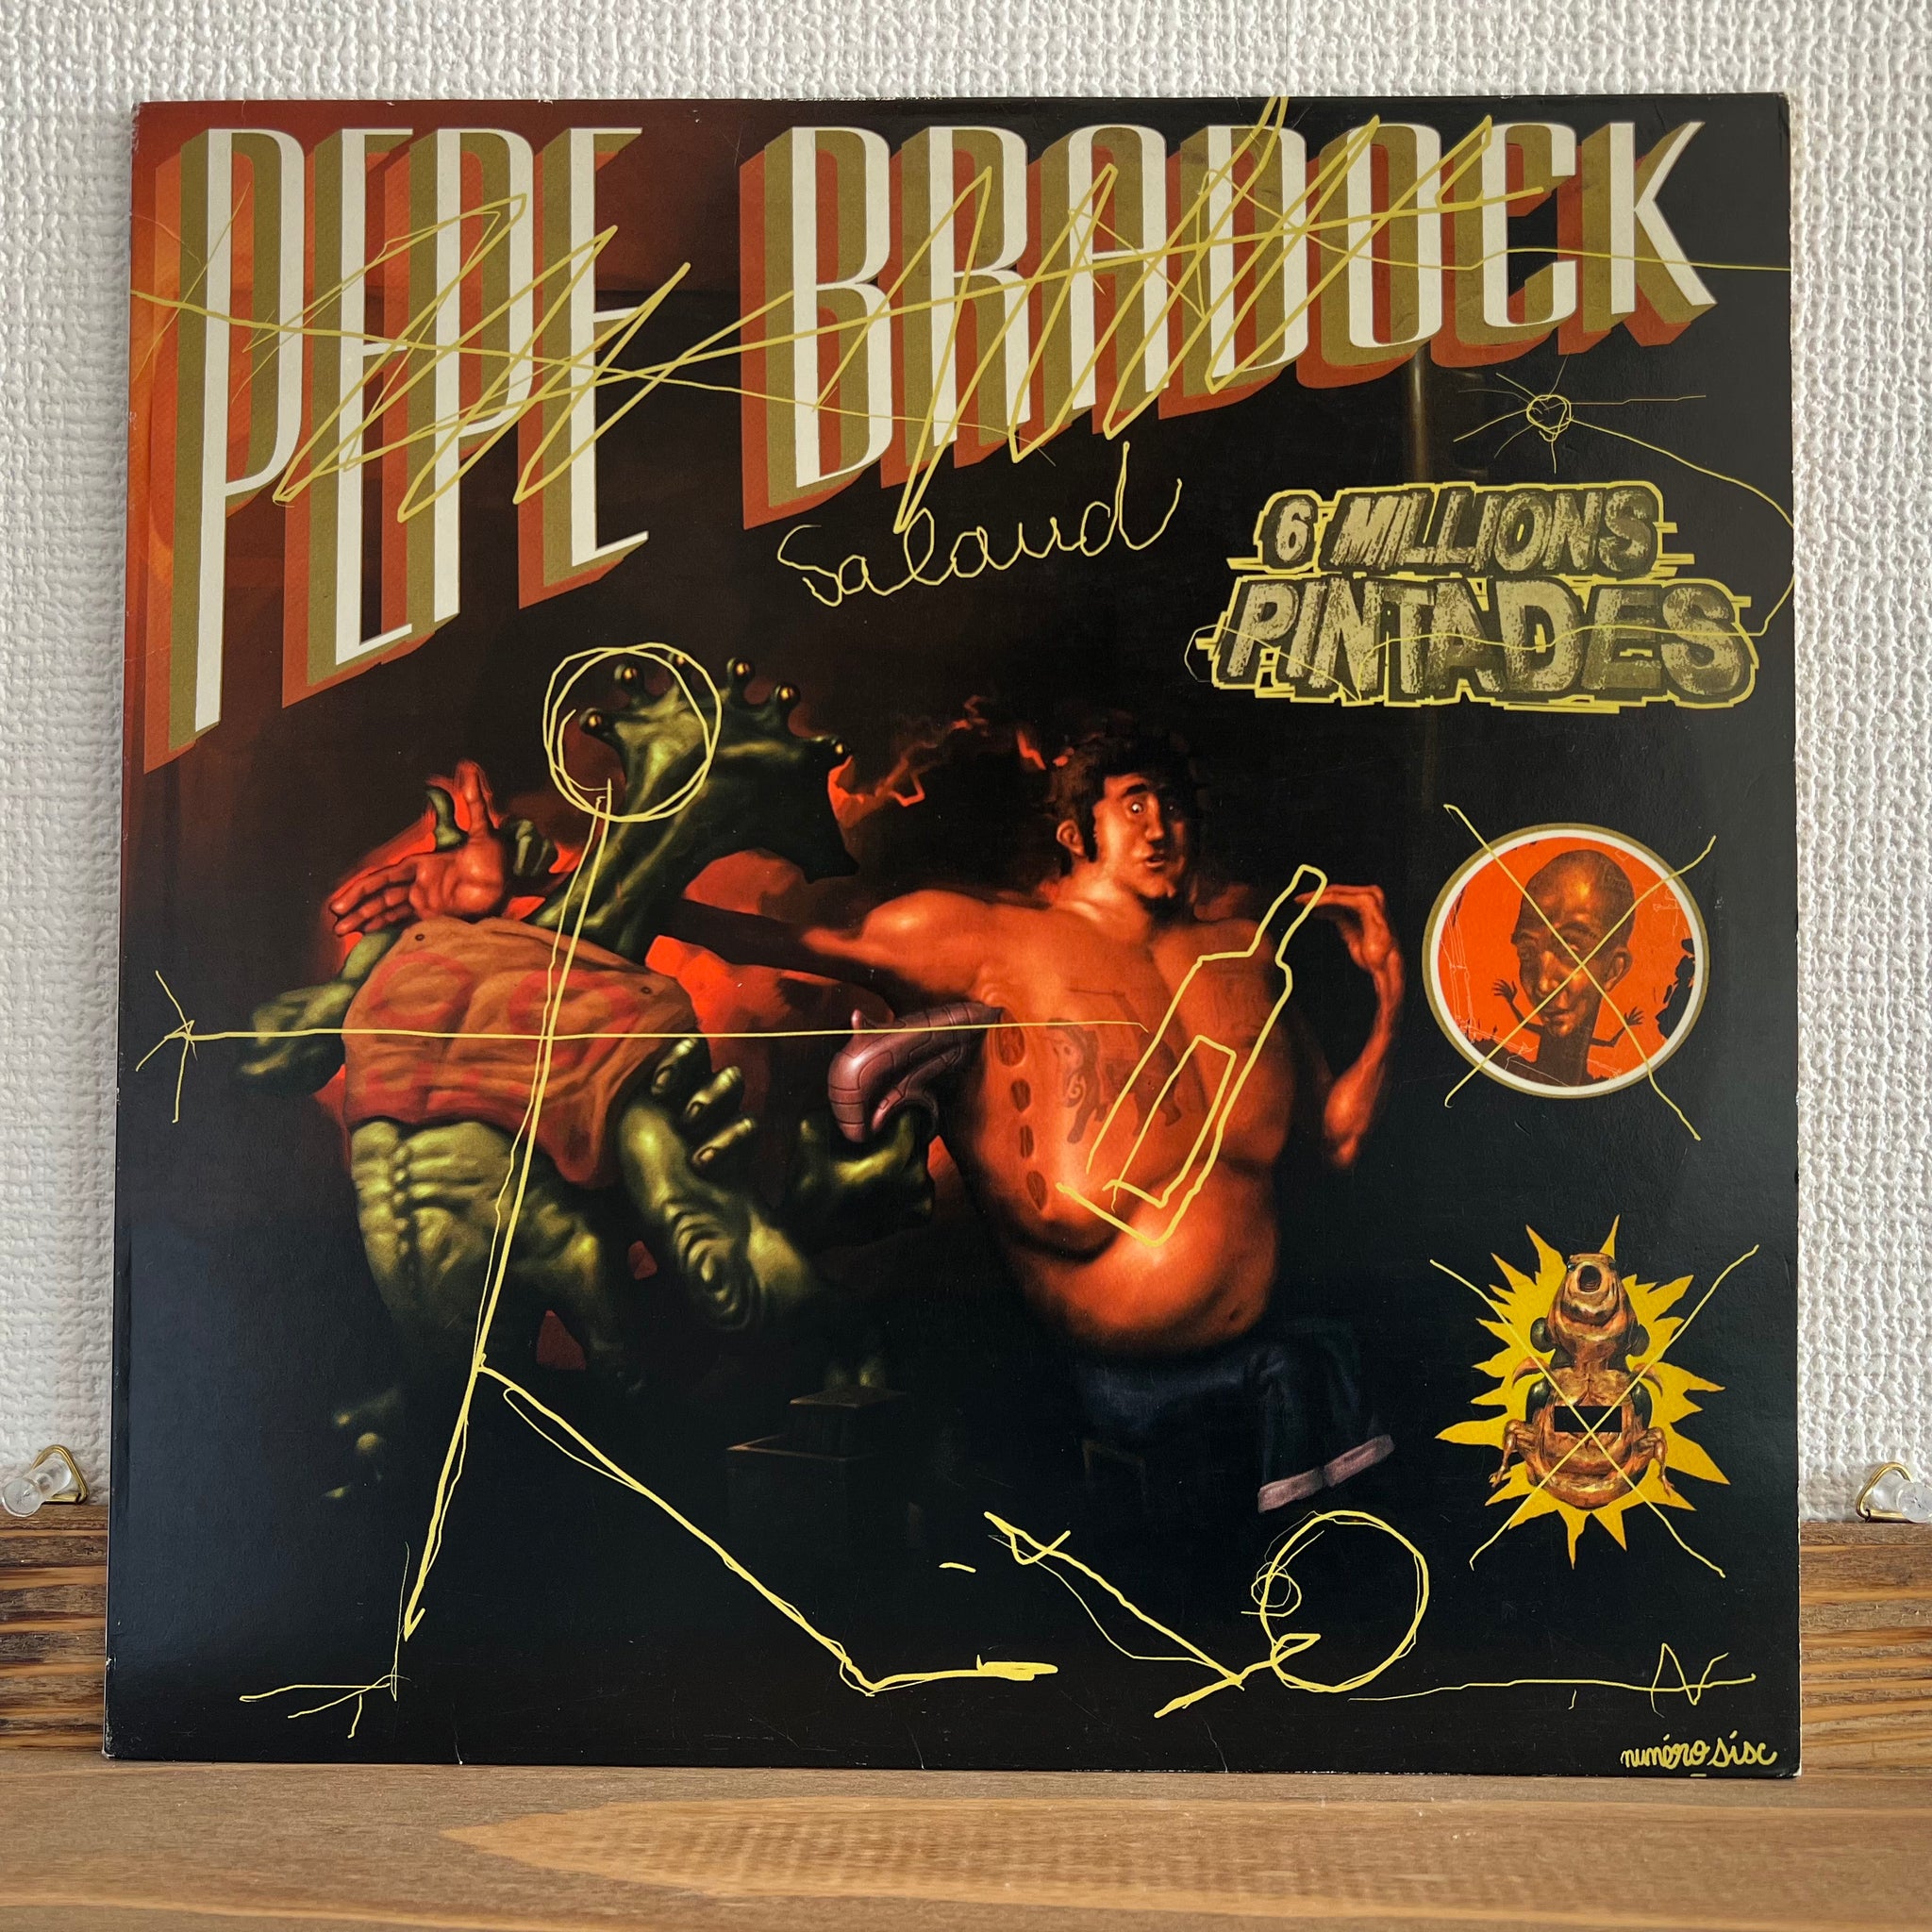 Pépé Bradock - 6 Millions Pintades EP